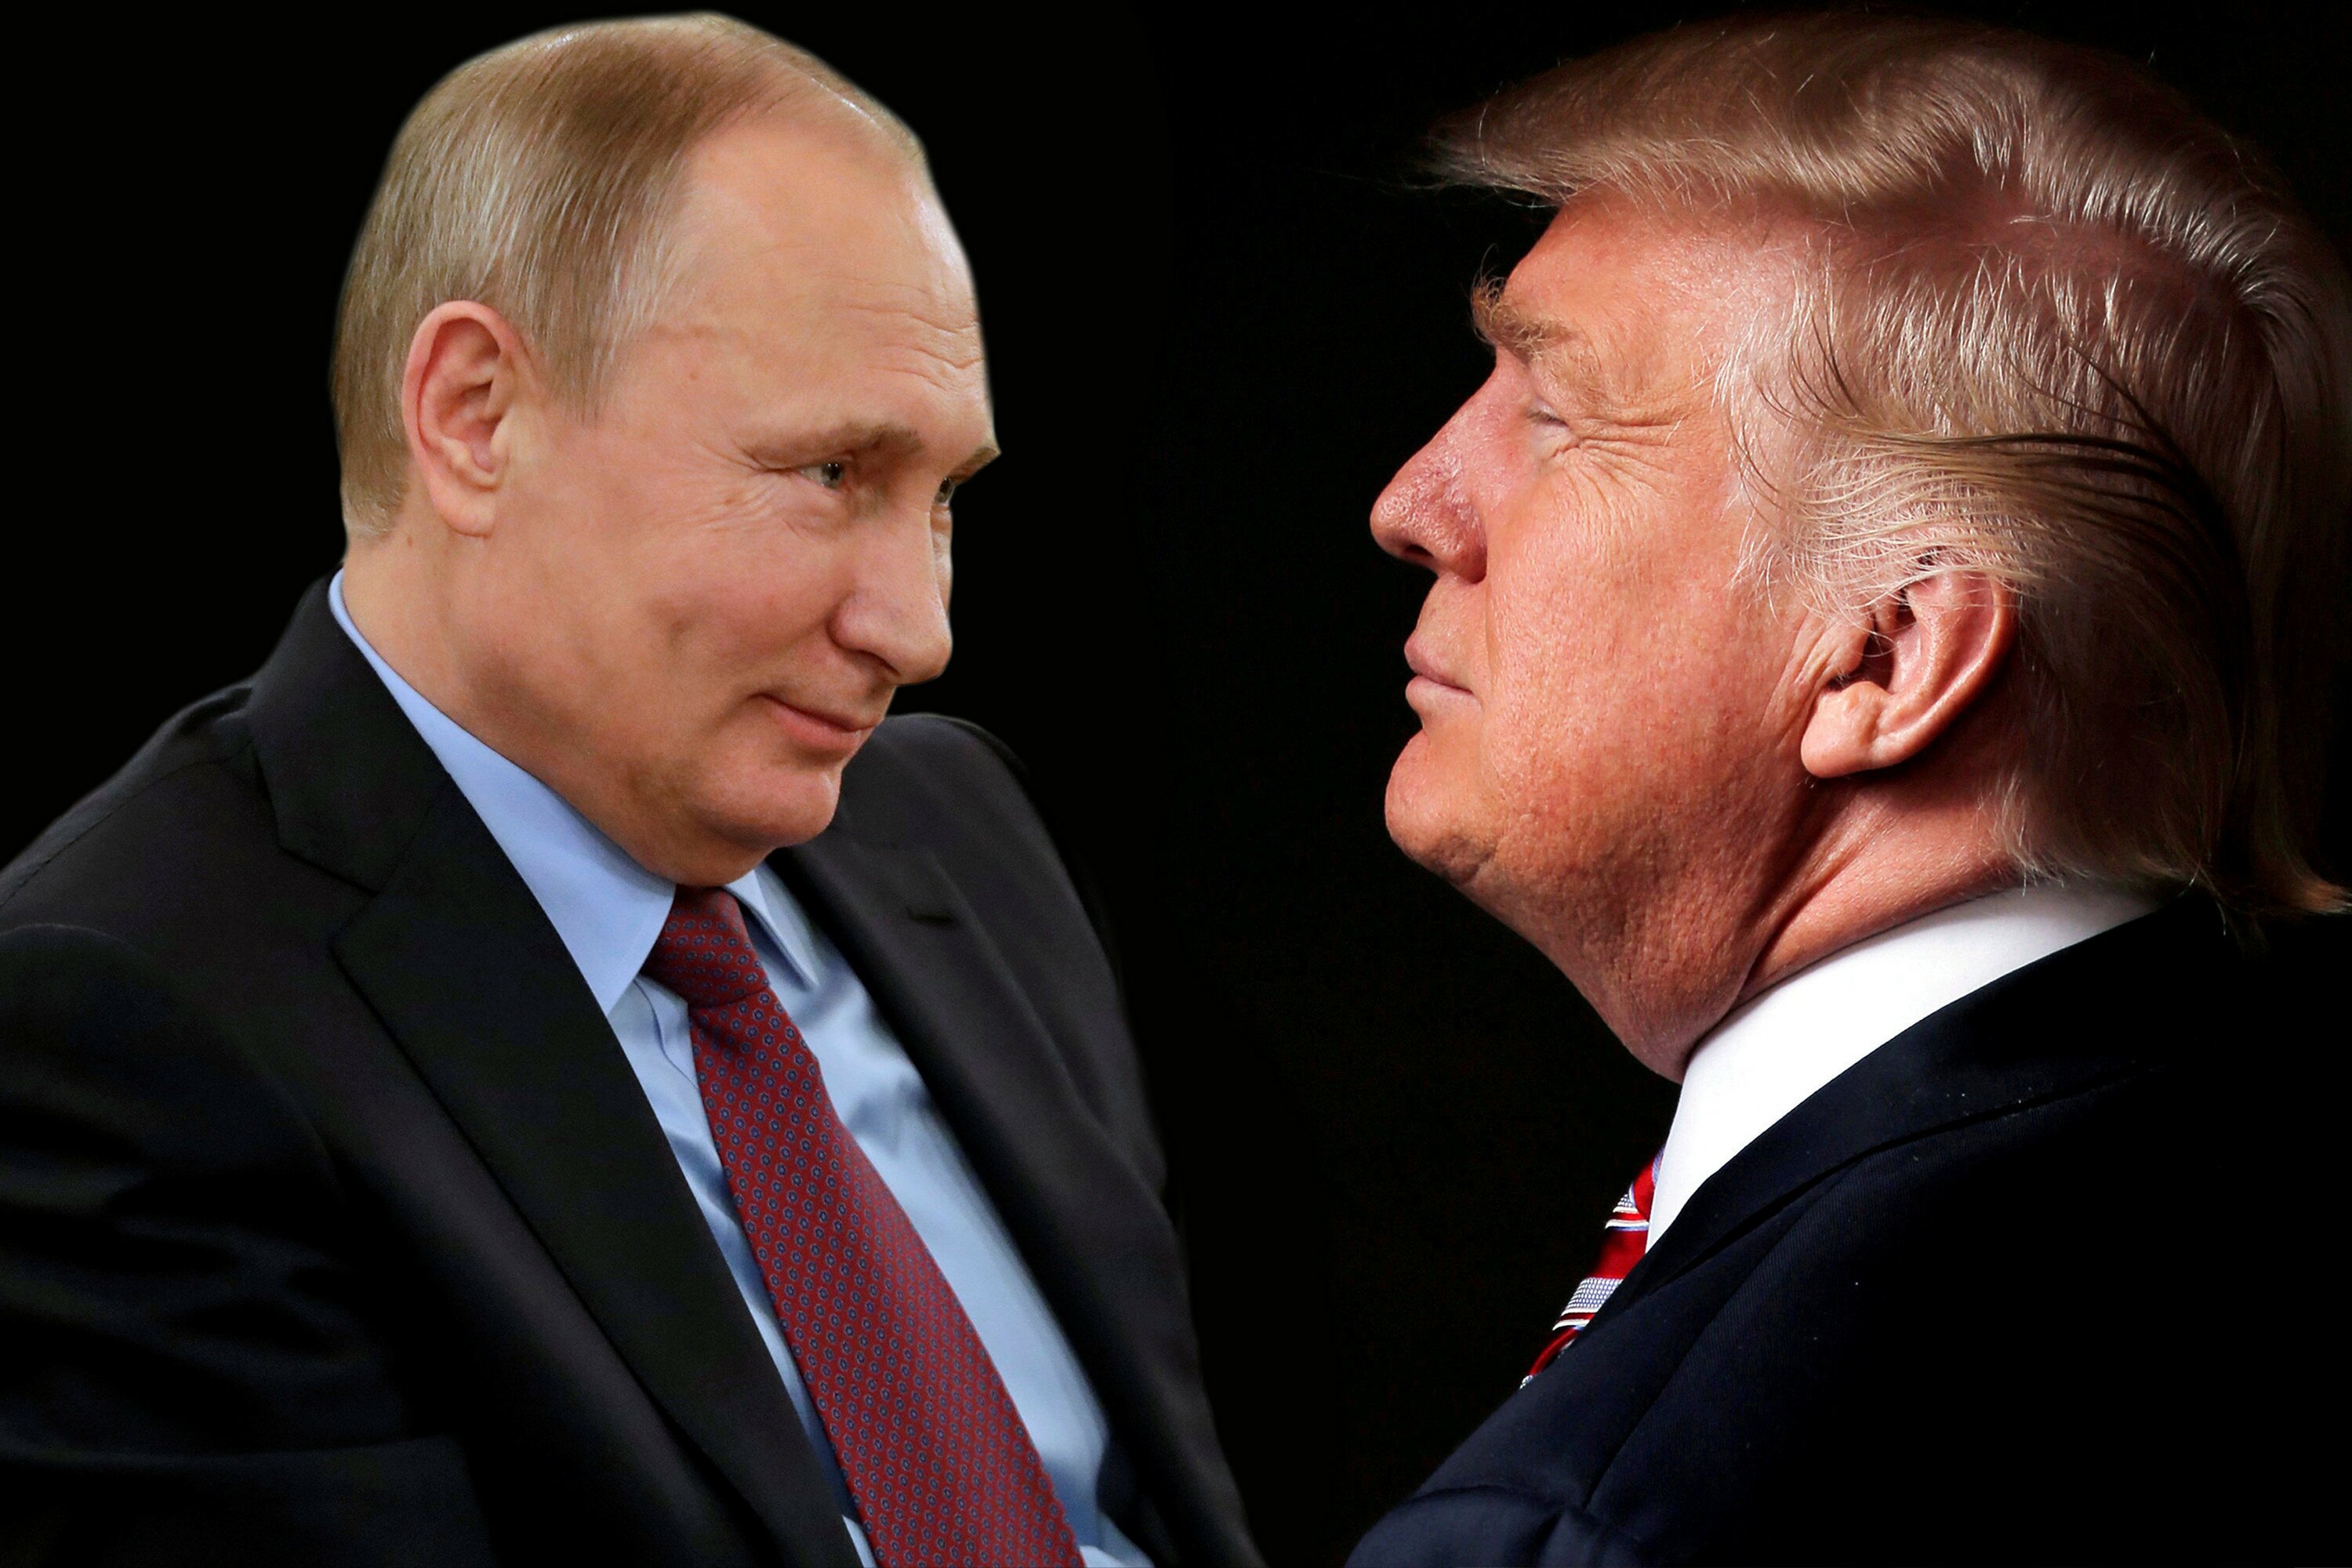 США, политика, Россия, Дональд Трамп, Владимир Путин, рукопожатие, видео, кадры, большая двадцатка, саммит в Гамбурге, телеканалы, россия 1, сегодня, онлайн 